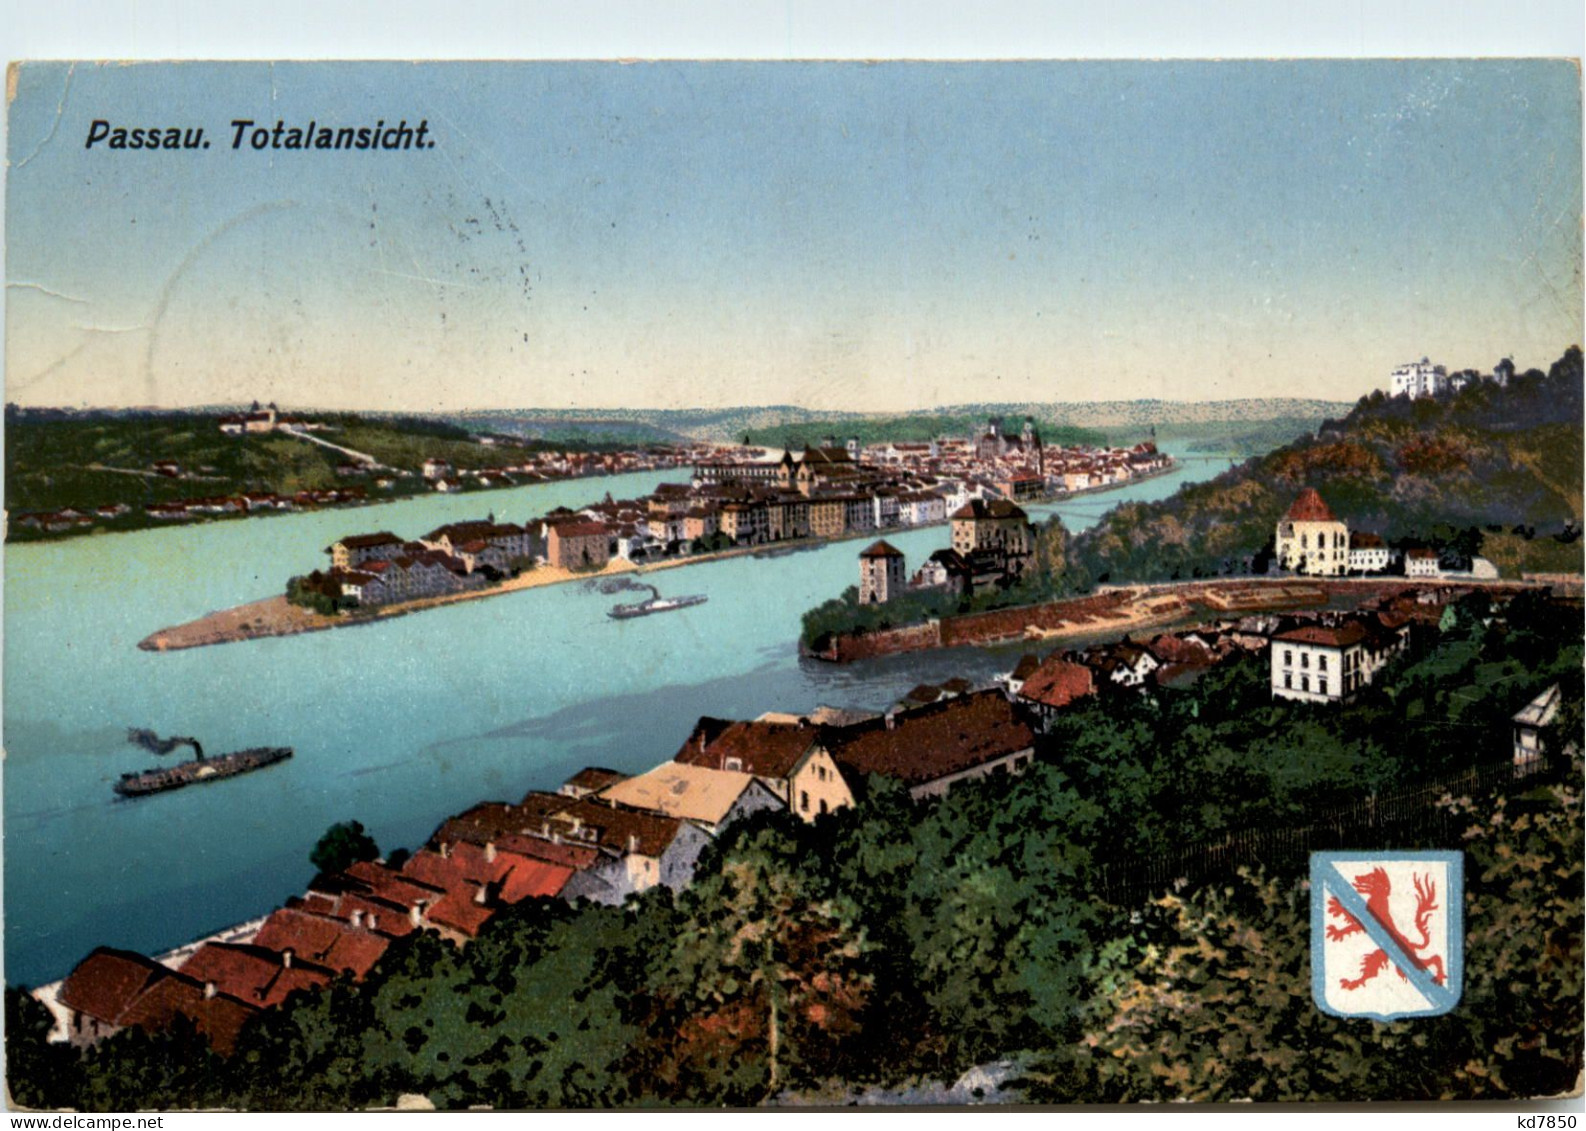 Passau, Totalansicht - Passau